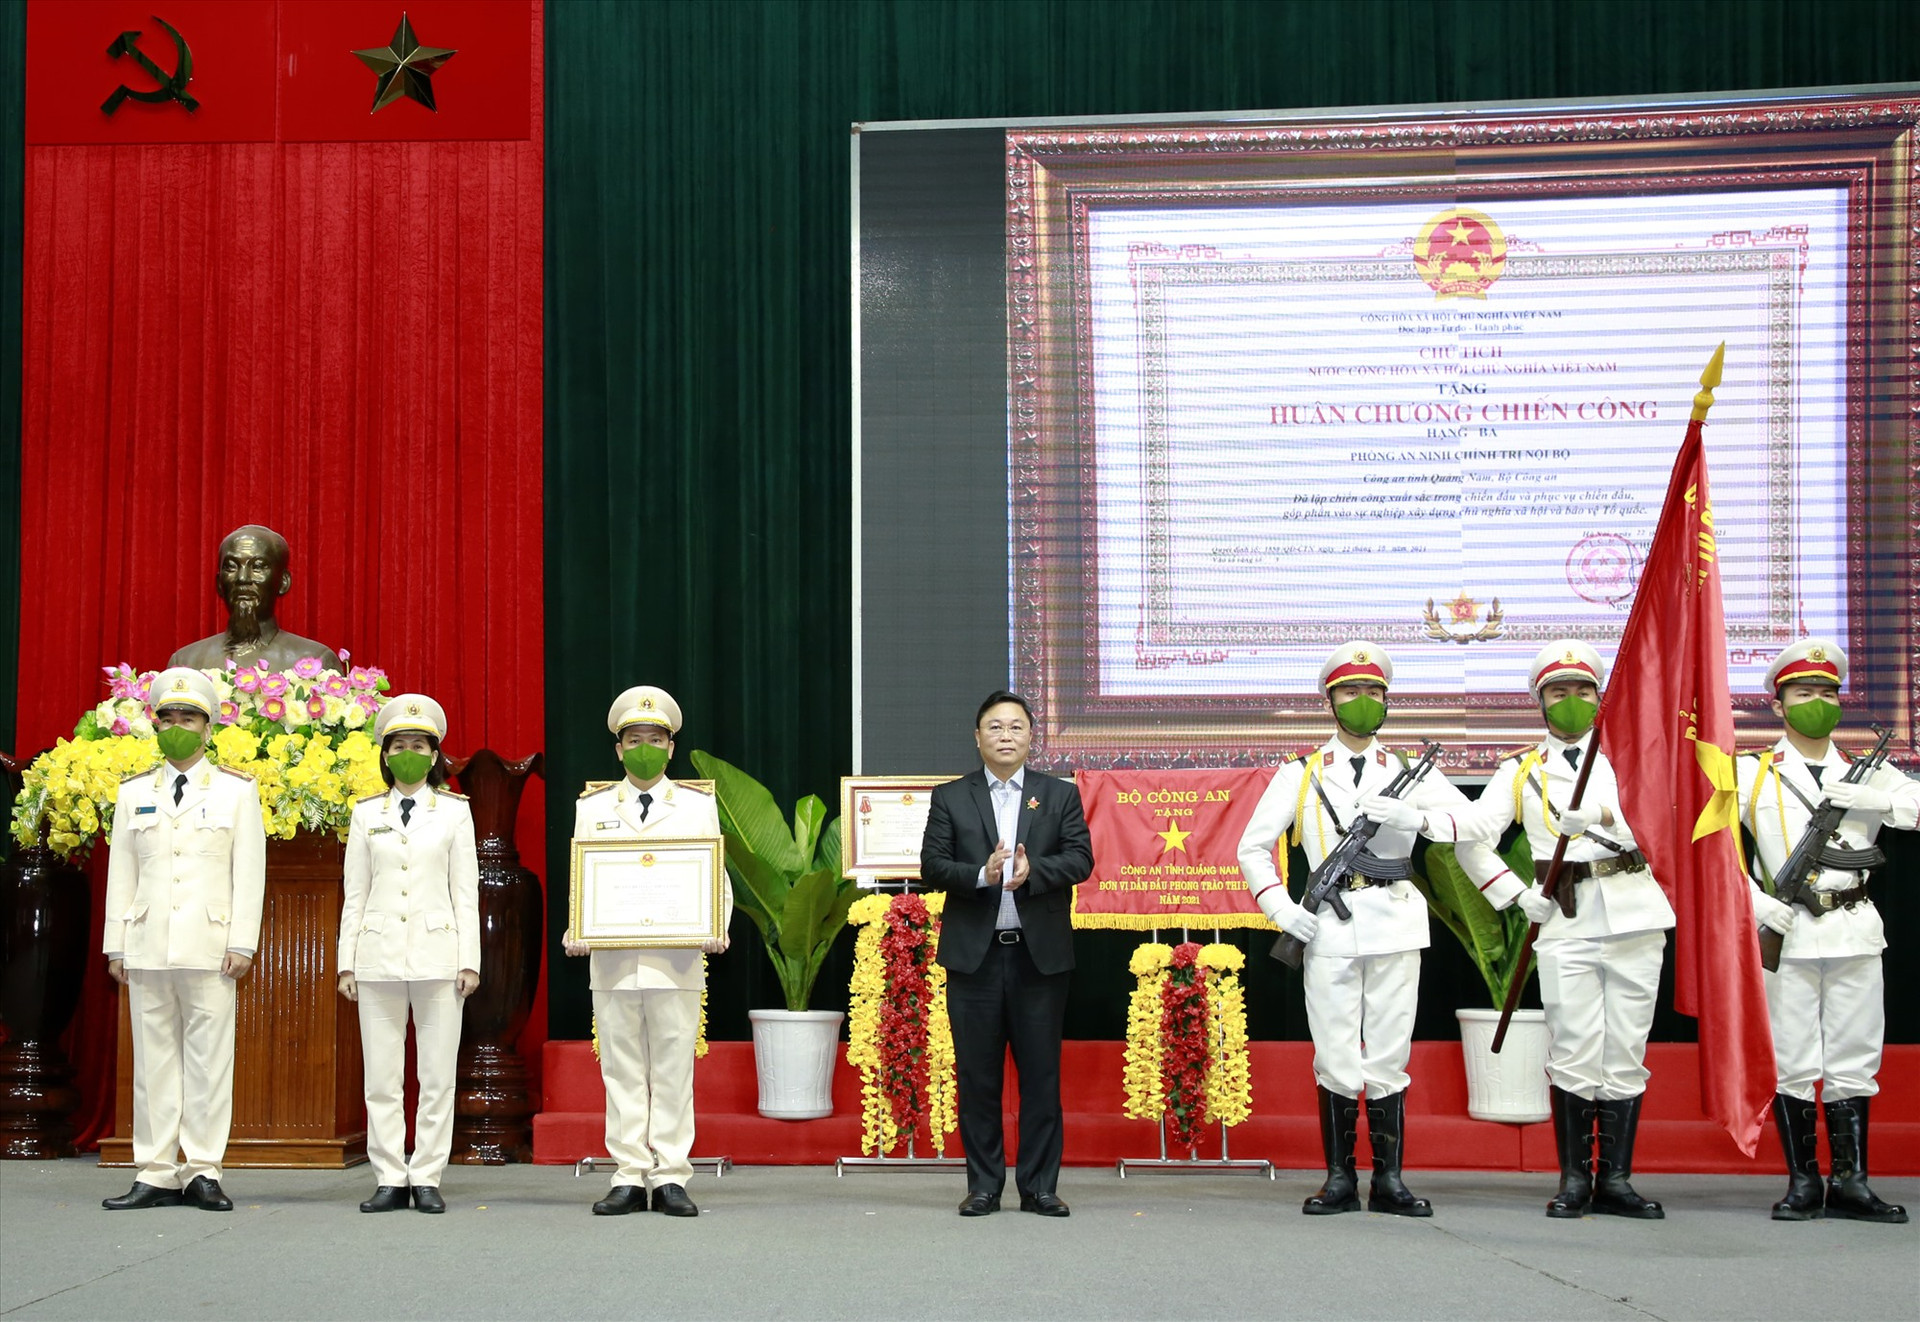 Với nhiều thành tích xuất sắc trong công tác, Phòng An ninh chính trị nội bộ được trao tặng Huân chương Chiến công hạng Ba. Ảnh: T.C